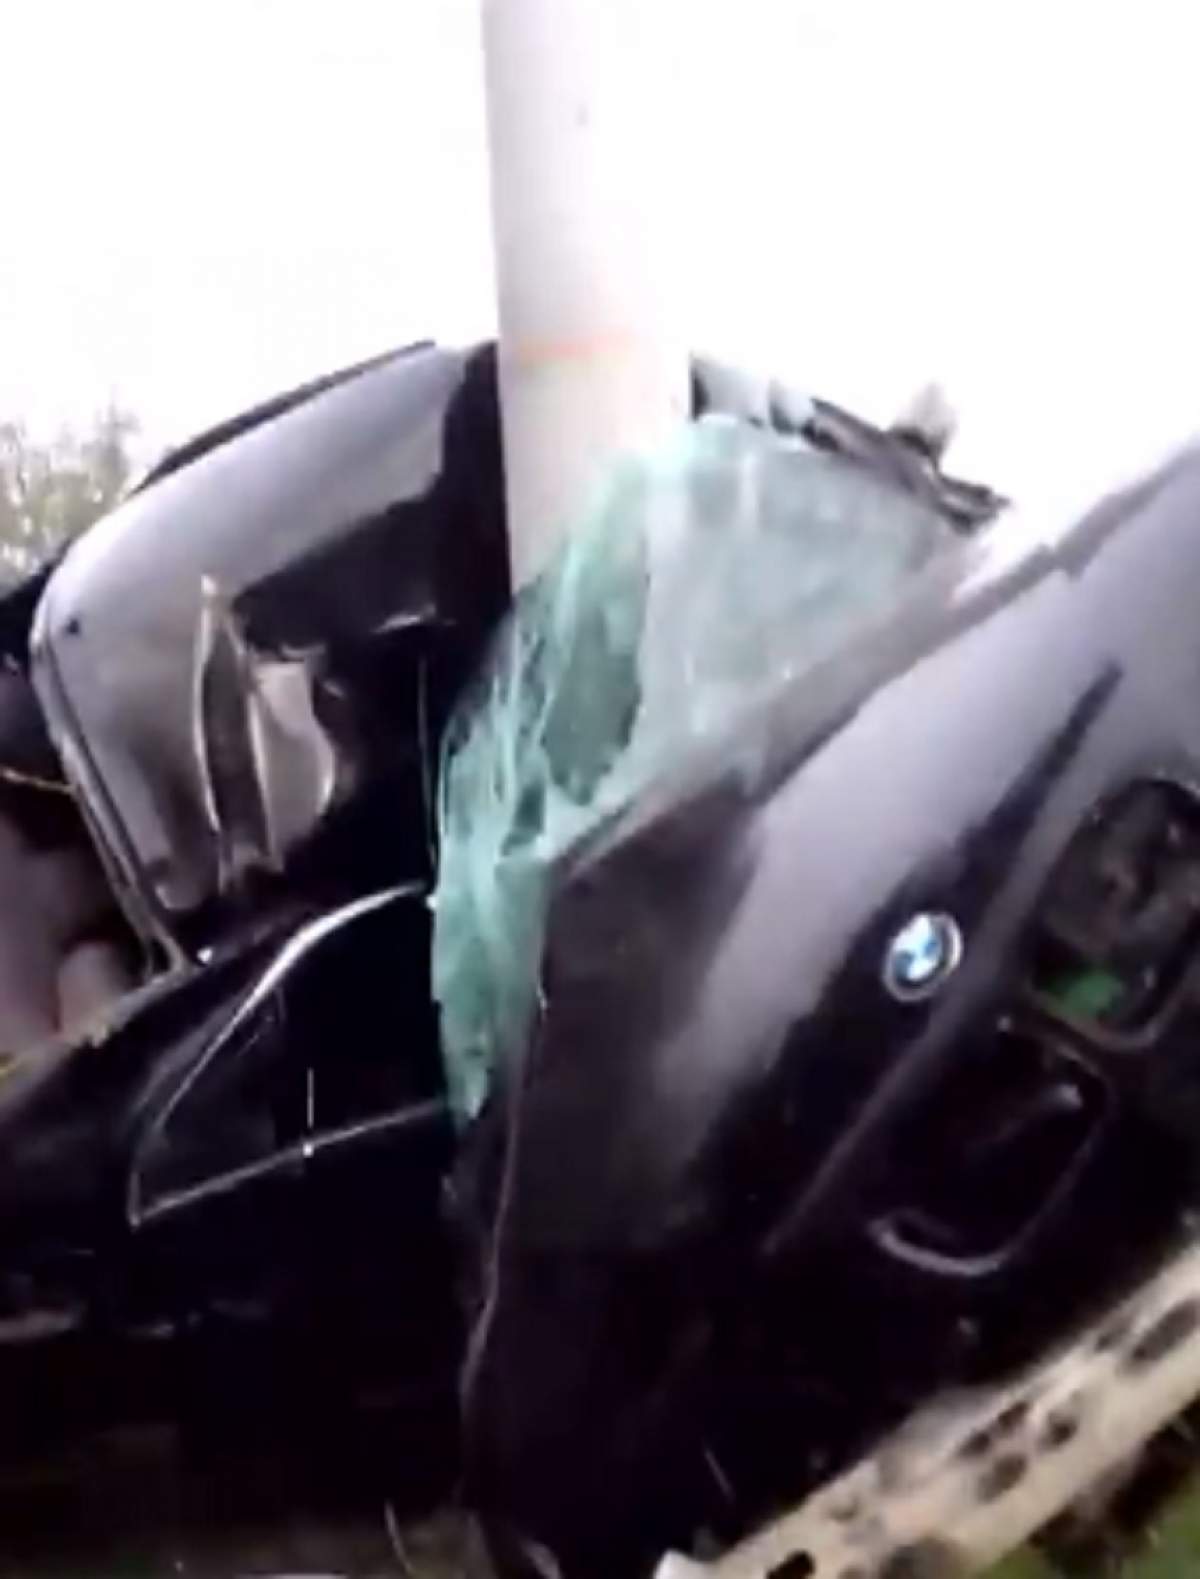 VIDEO / Accident dramatic în Ilfov! O mașină a ajuns morman de fiare, după ce a lovit puternic un stâlp